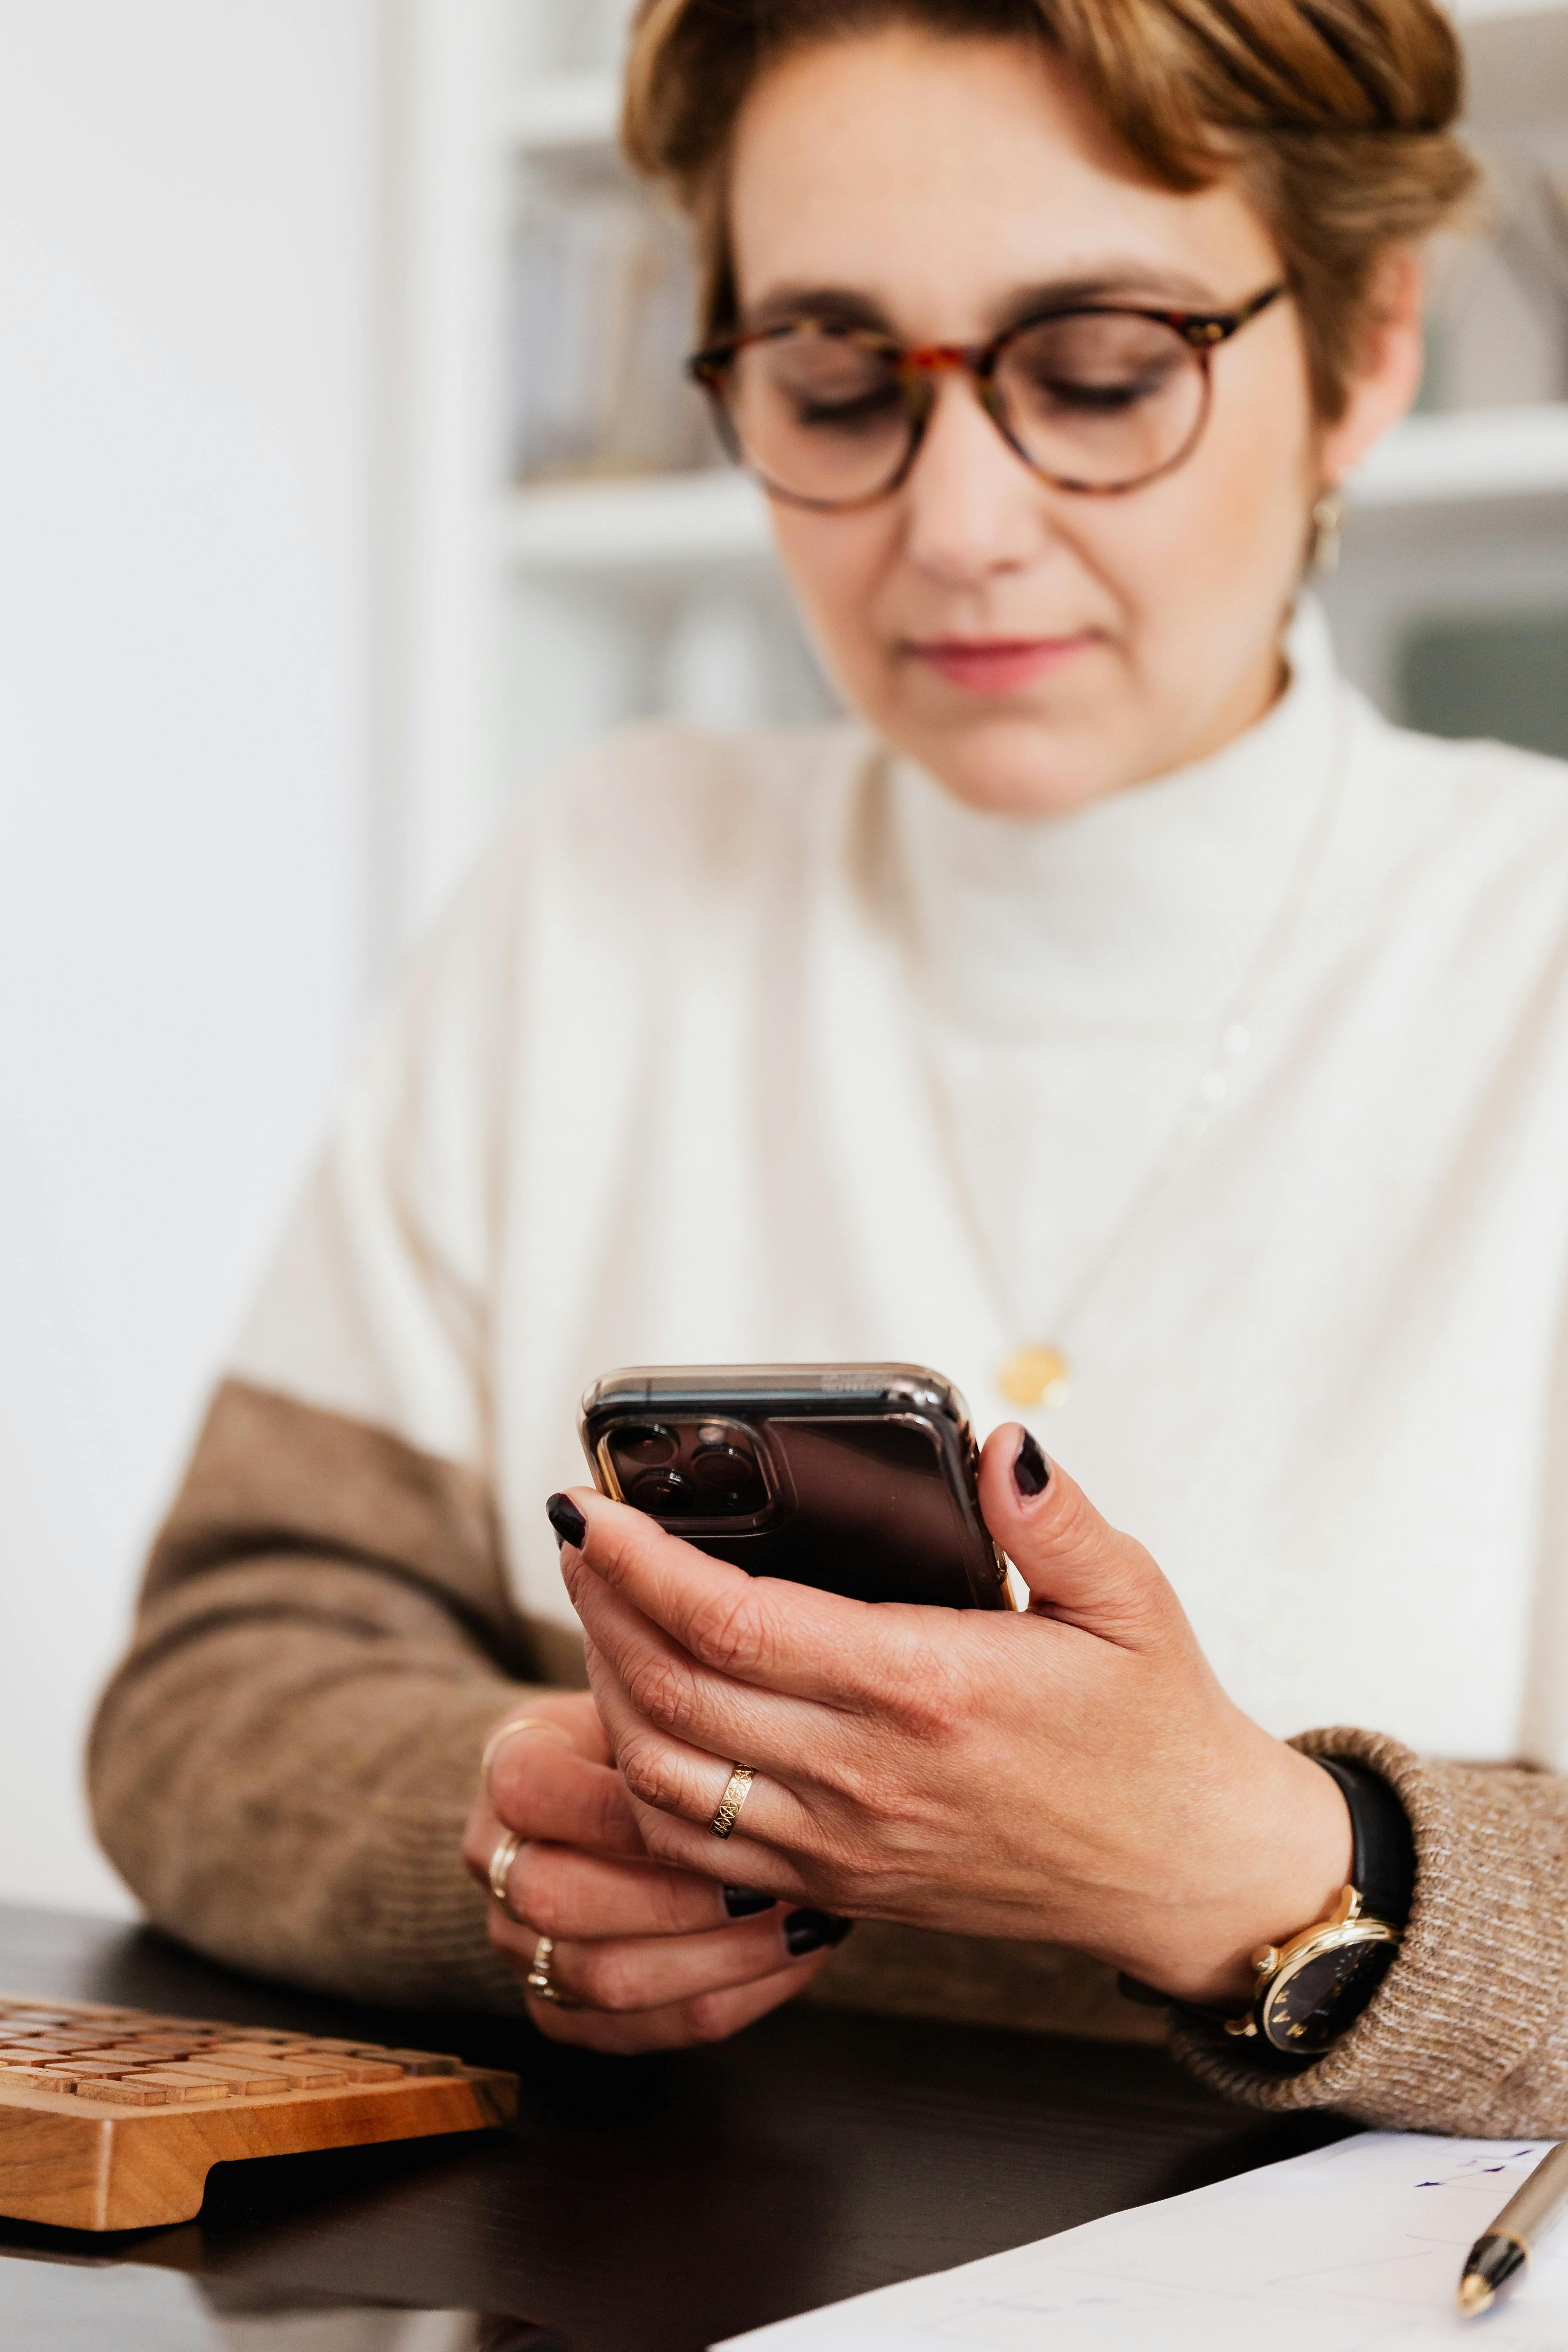 Une femme lisant des messages sur son smartphone | Source : Pexels